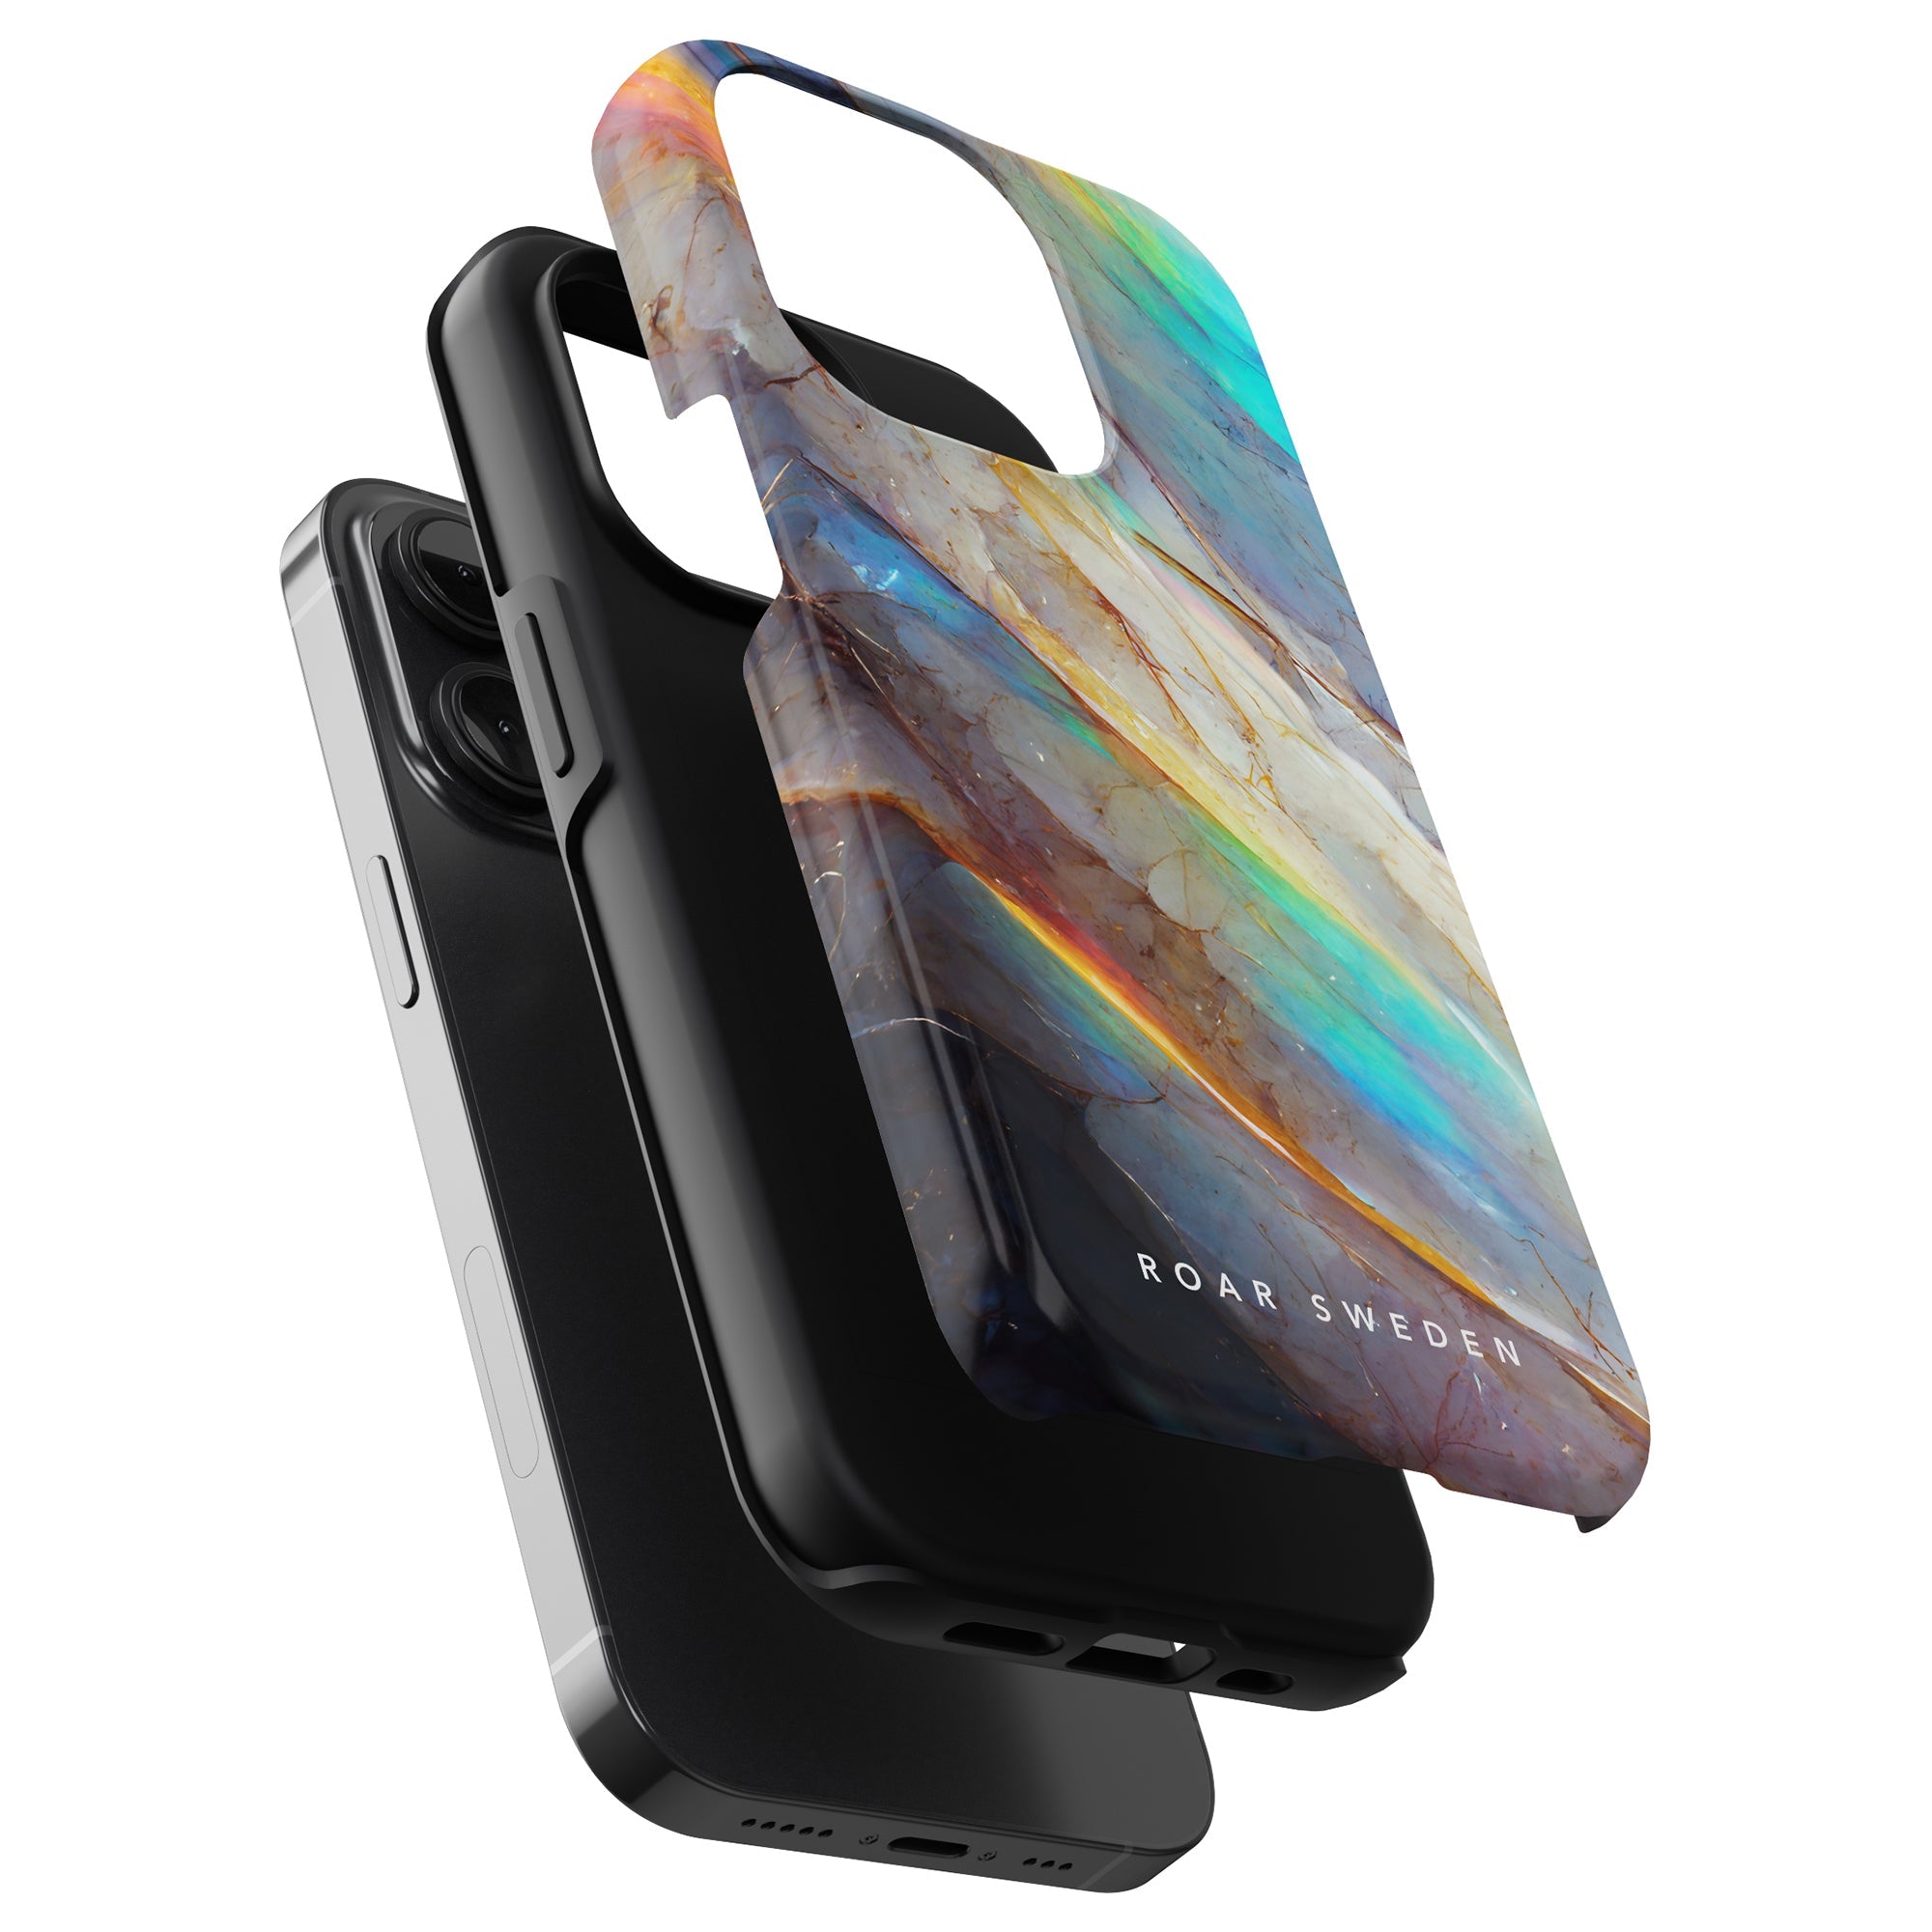 Vi presenterar Crystal - Tough Case, ett livfullt och skyddande fodral för din iPhone 11 Pro. Skydda din dyrbara mobiltelefon med stil med detta färgglada marmorfodral.